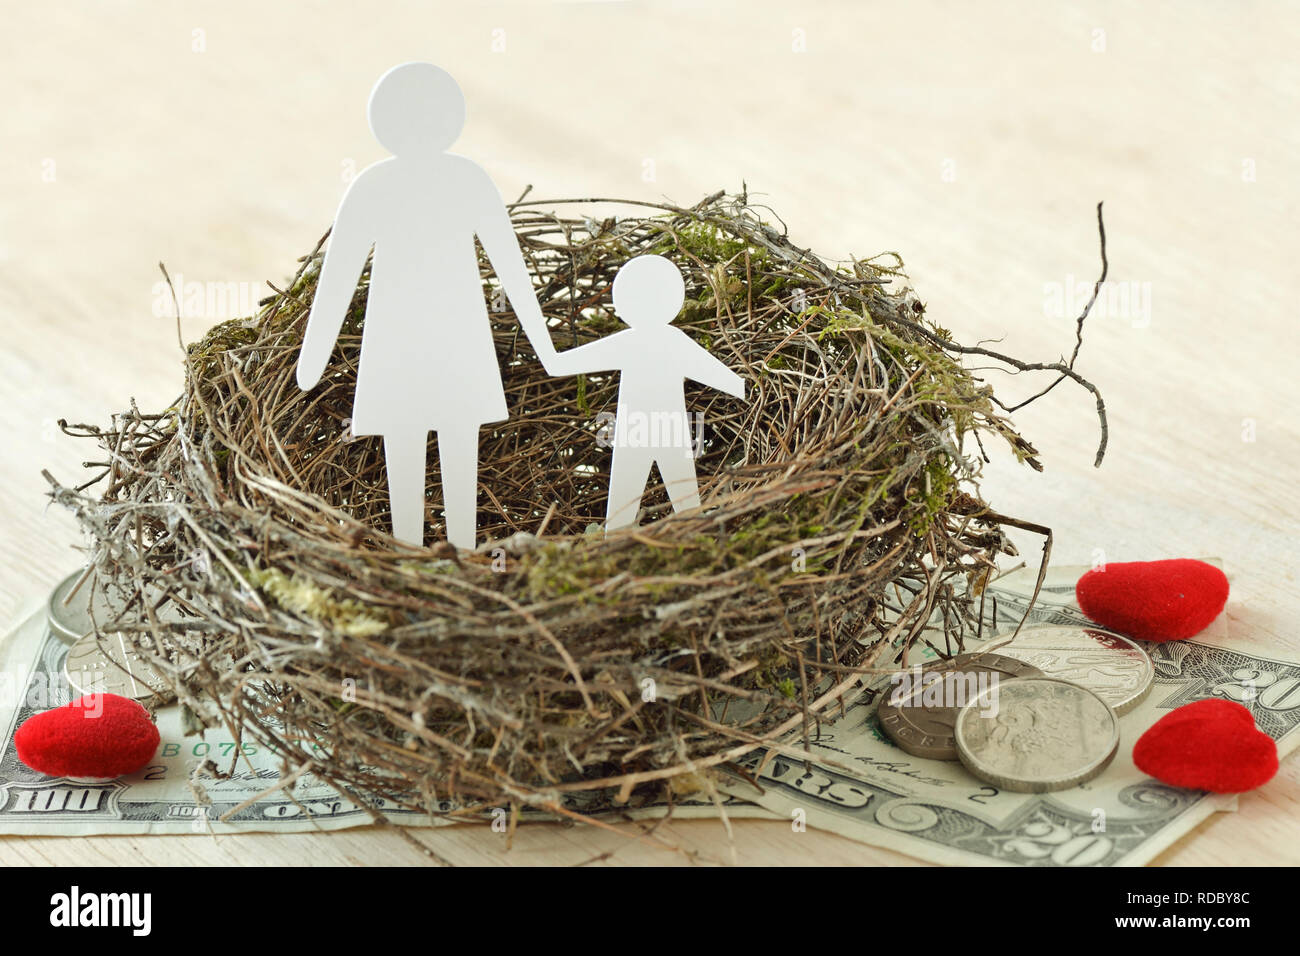 La mère et le fils de papier dans leur nid sur l'argent et coeurs - Notion de famille monoparentale Banque D'Images